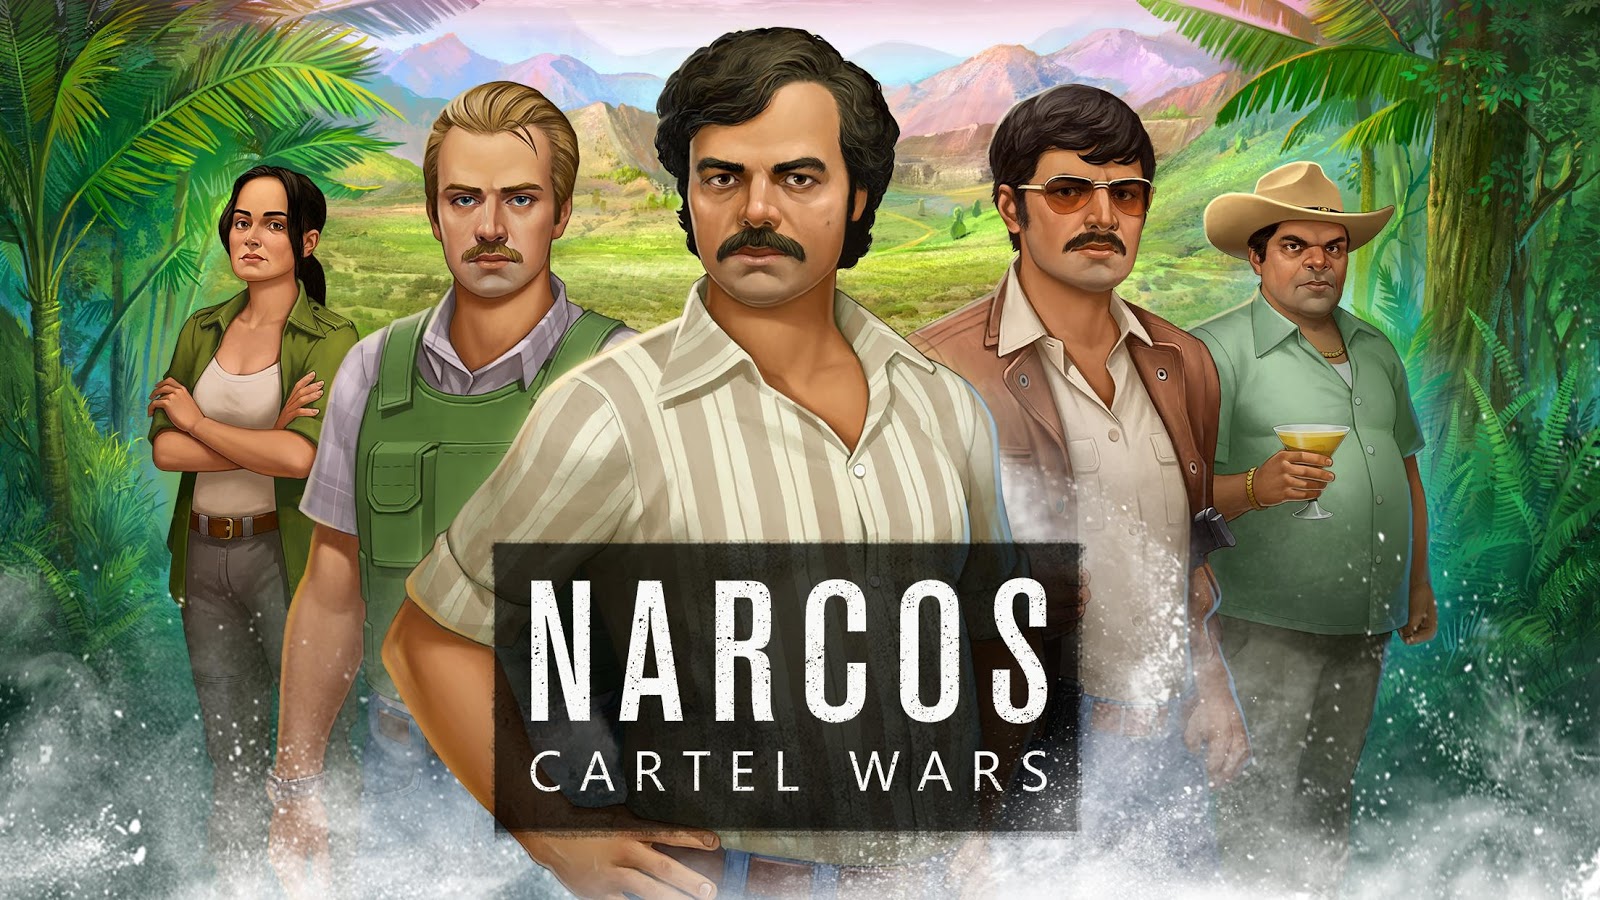 Cartel Wars - Narcos Cartel Wars Pc , HD Wallpaper & Backgrounds